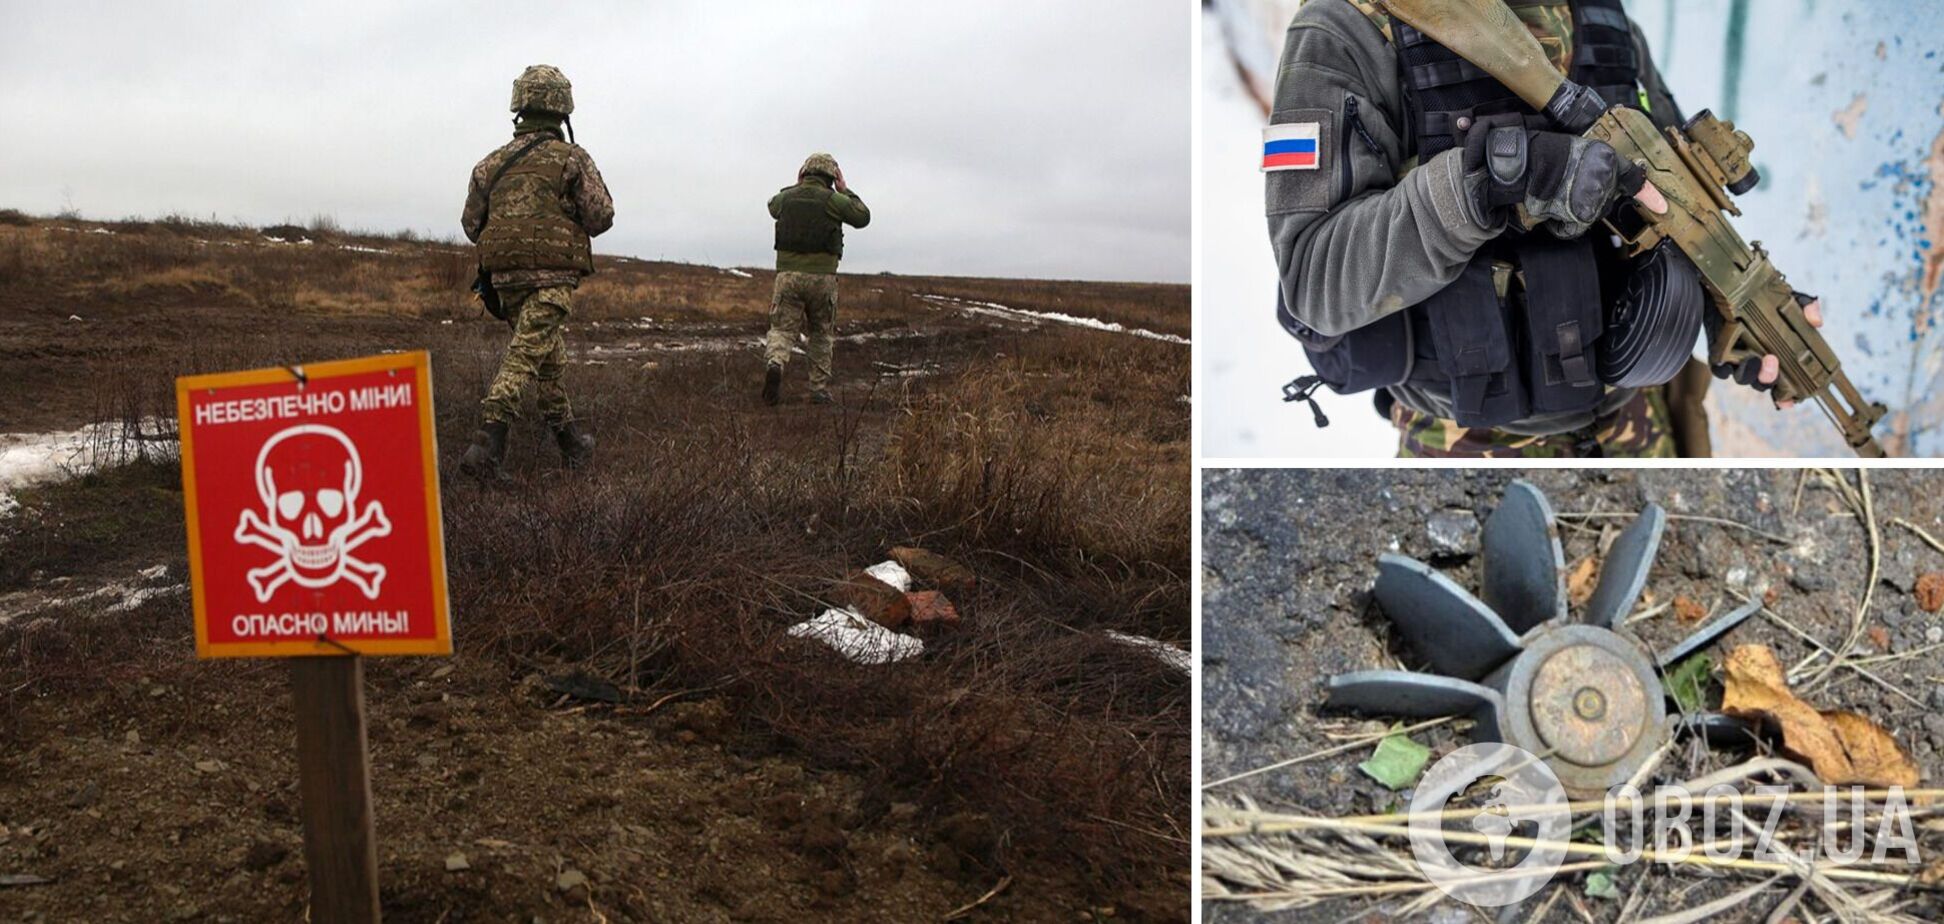 Из-за российских мин пострадали еще два человека, в том числе маленький ребенок